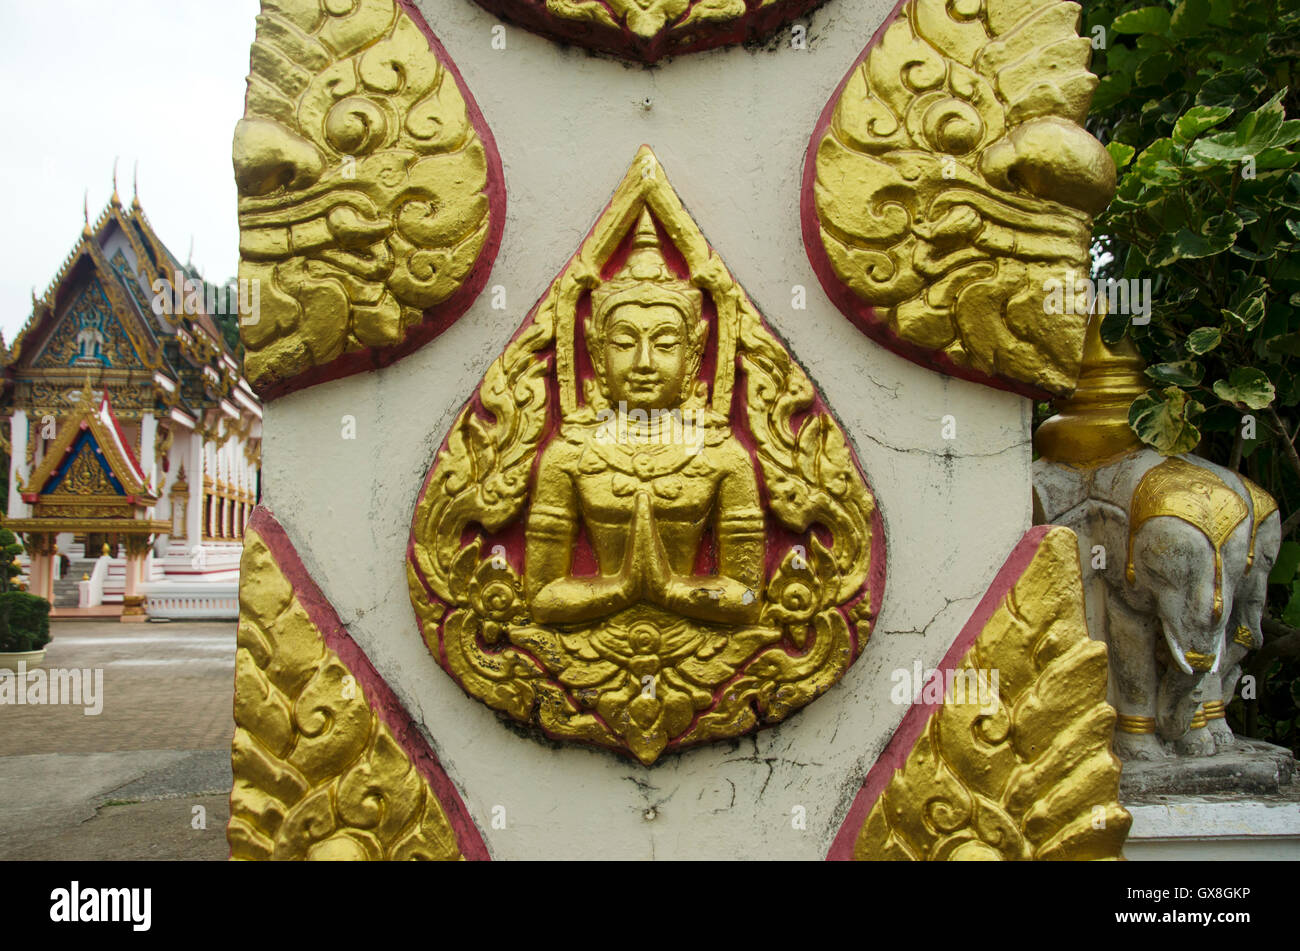 Sculpture de la sculpture et de l'ange à la porte de Wat Chang Hai Ratburanaram Luang Pu Thuat à Pattani provinces du sud de la Thaïlande Banque D'Images